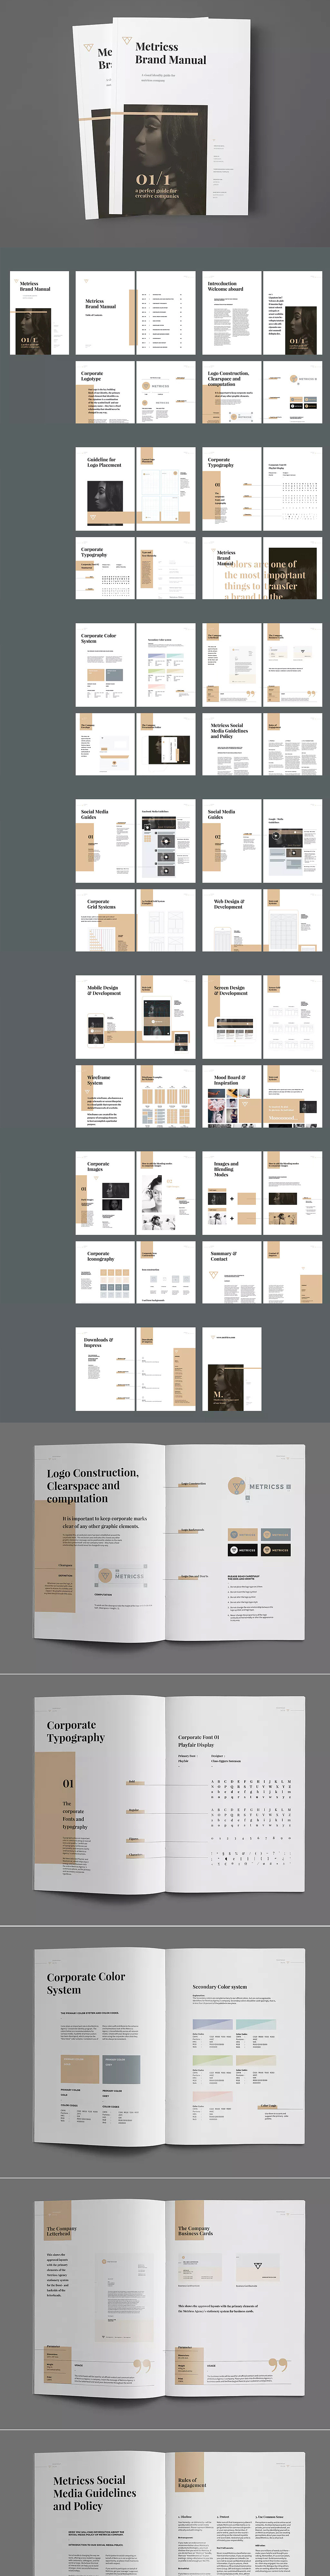 21套vi手册vi品牌产品画册企业视觉识别系统图册排版id素材模板源文件